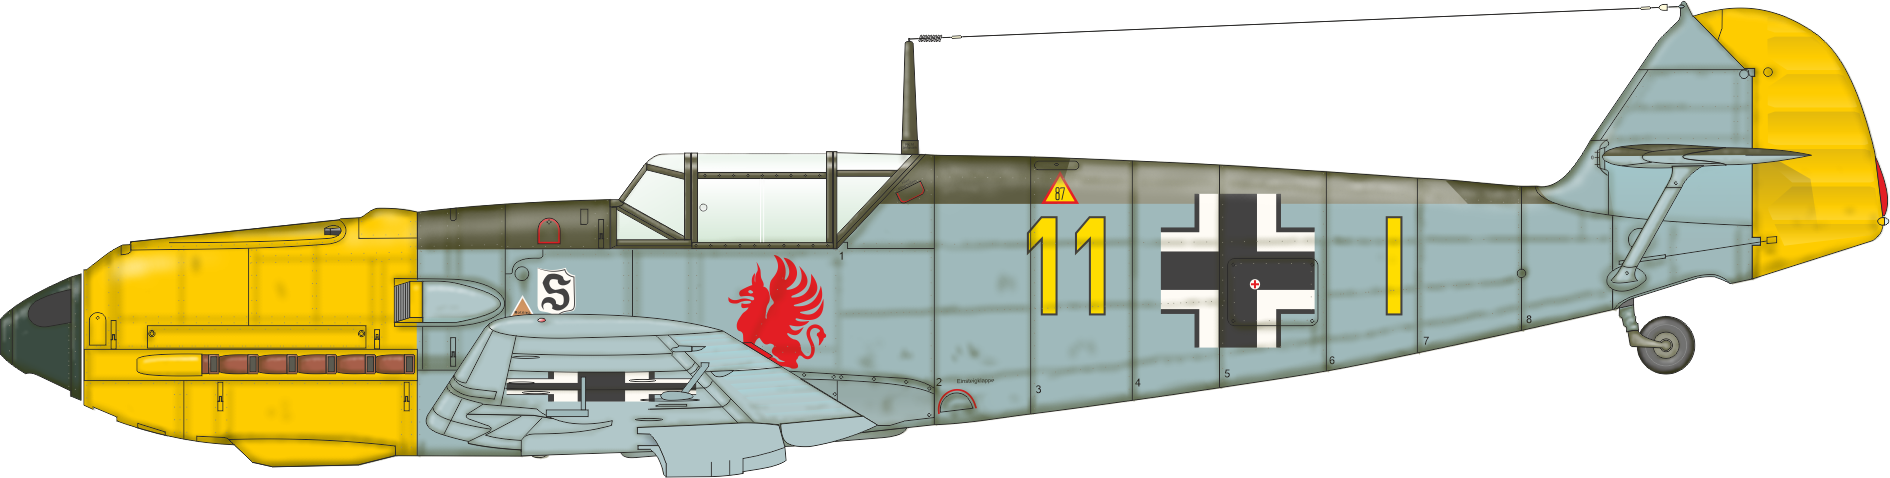 Eduard 1/48 Messerschmitt Bf-109E-1 ProfiPACK Edition Kit # 8261